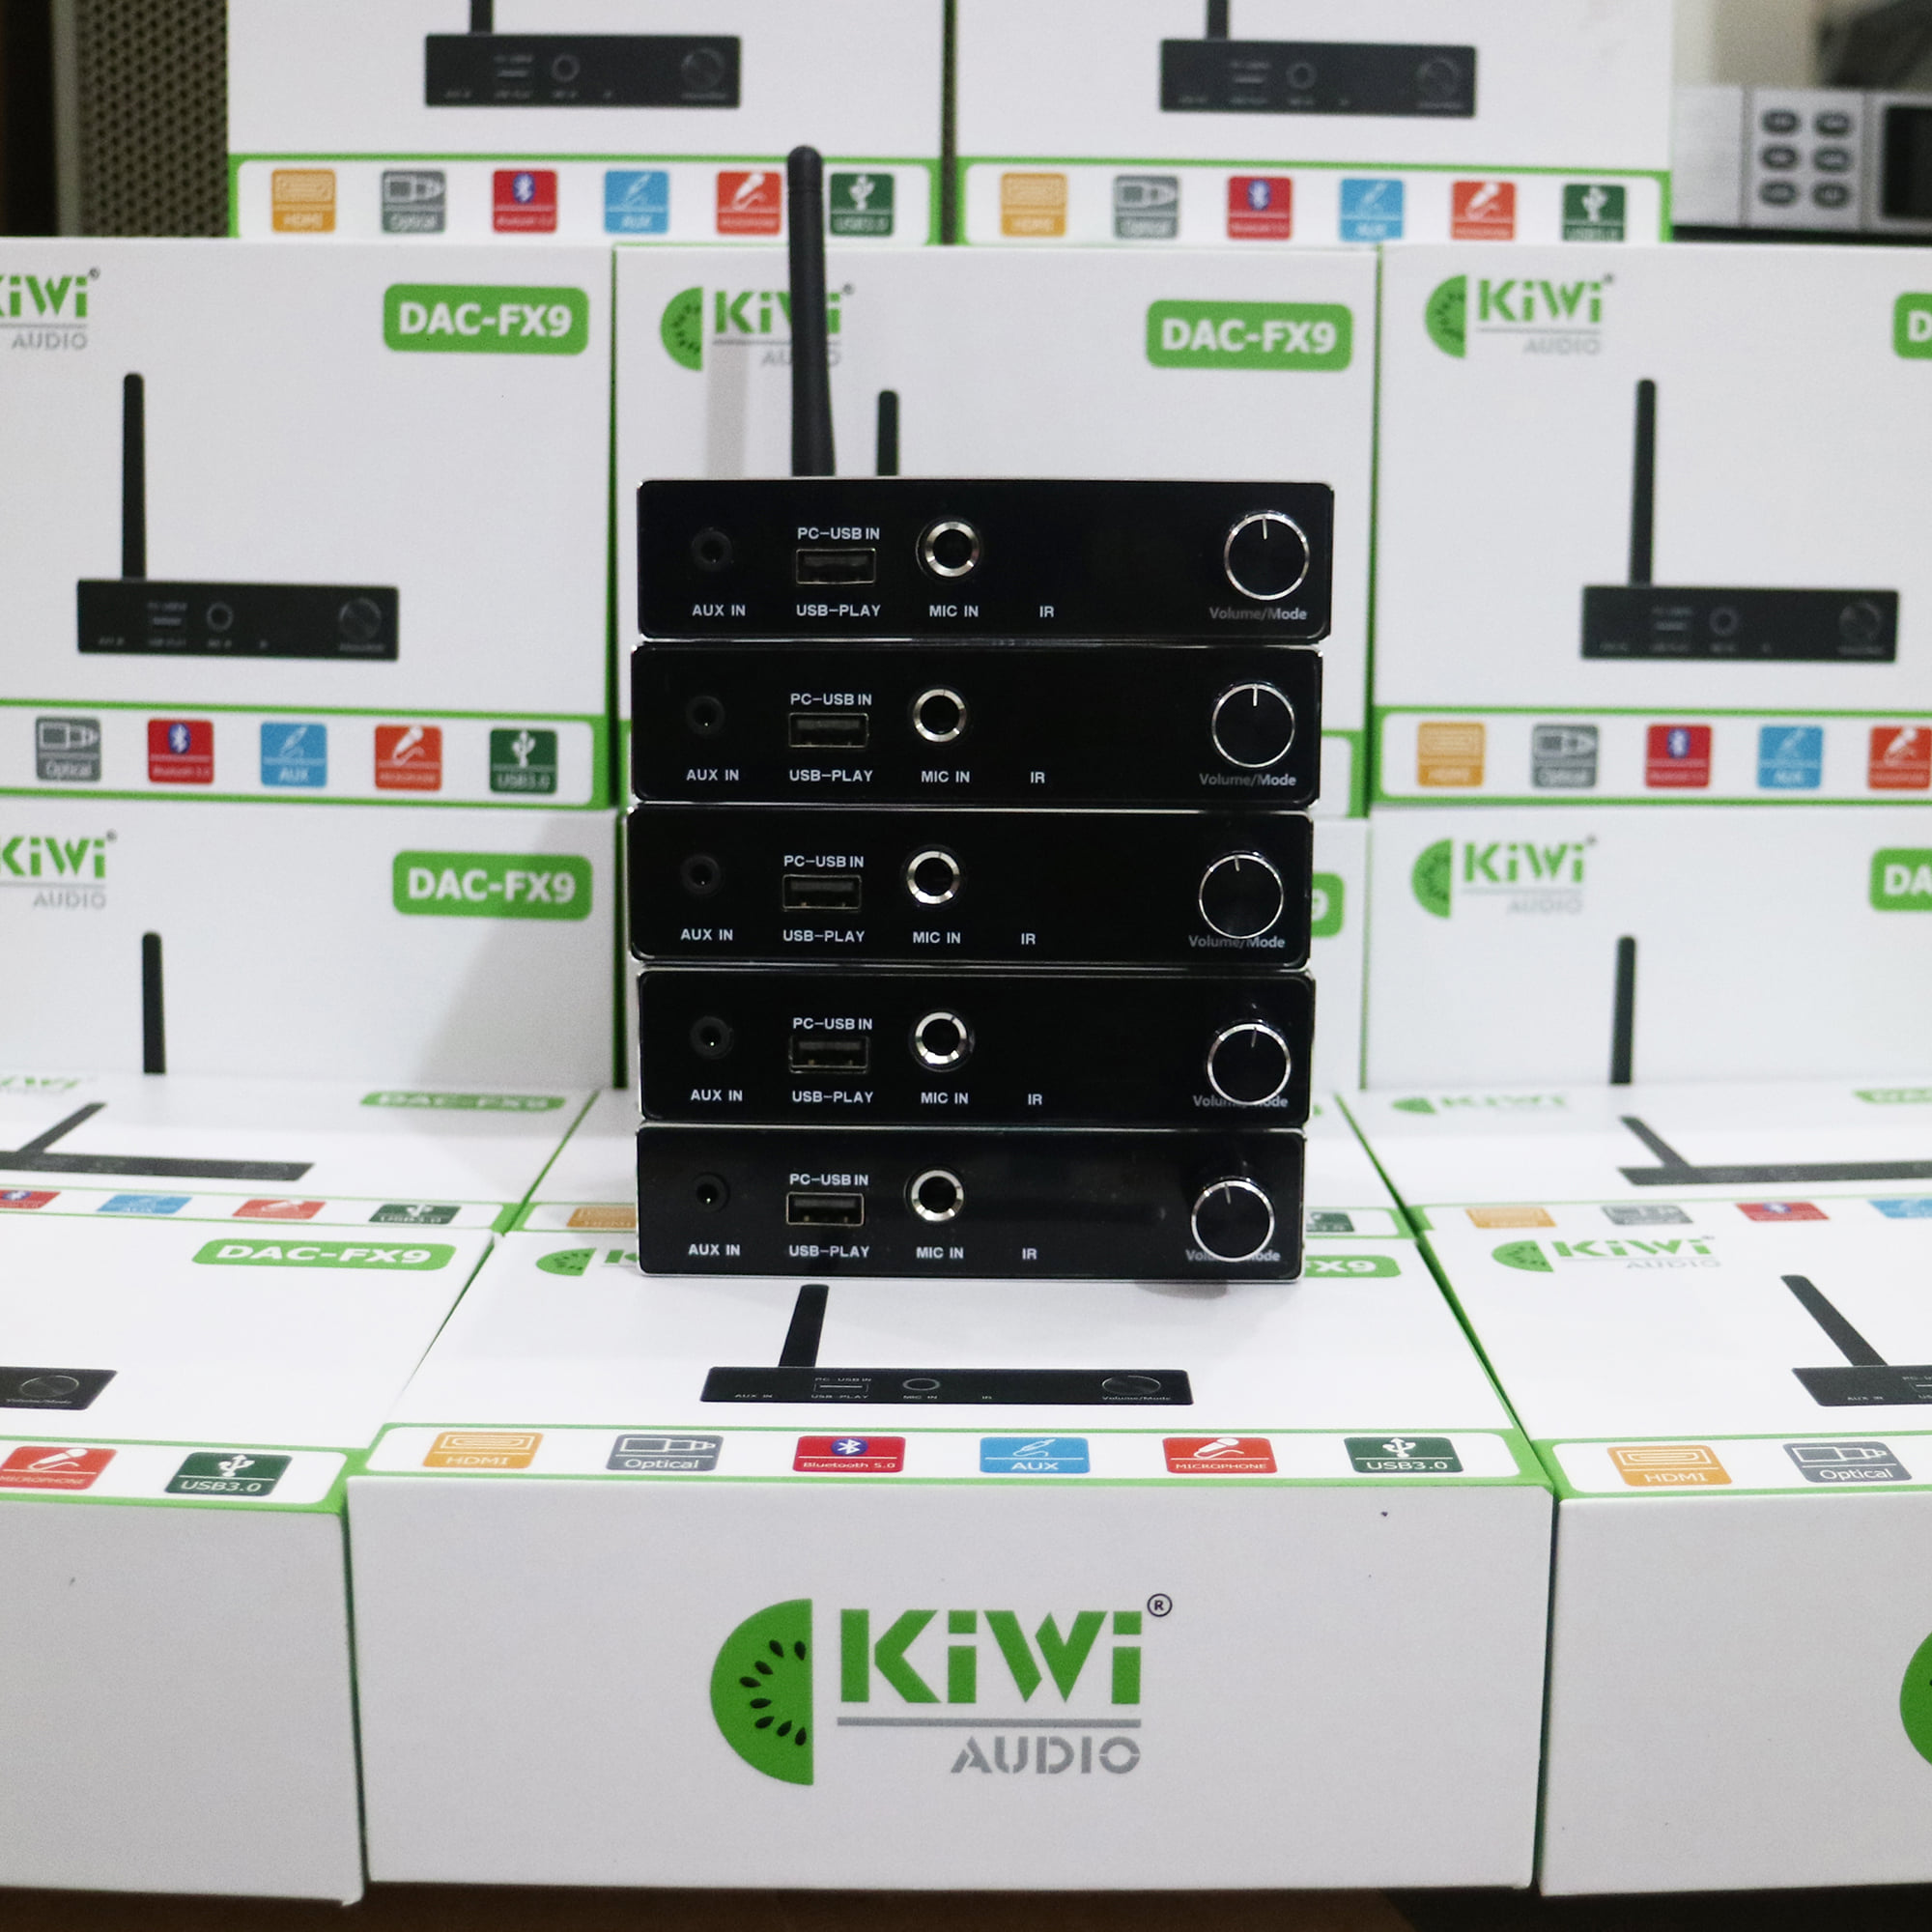 DAC Kiwi FX9 _ Bộ chuyển đổi tín hiệu âm thanh số, tích hợp cổng micro, bảo hành 12 tháng, hàng chính hãng